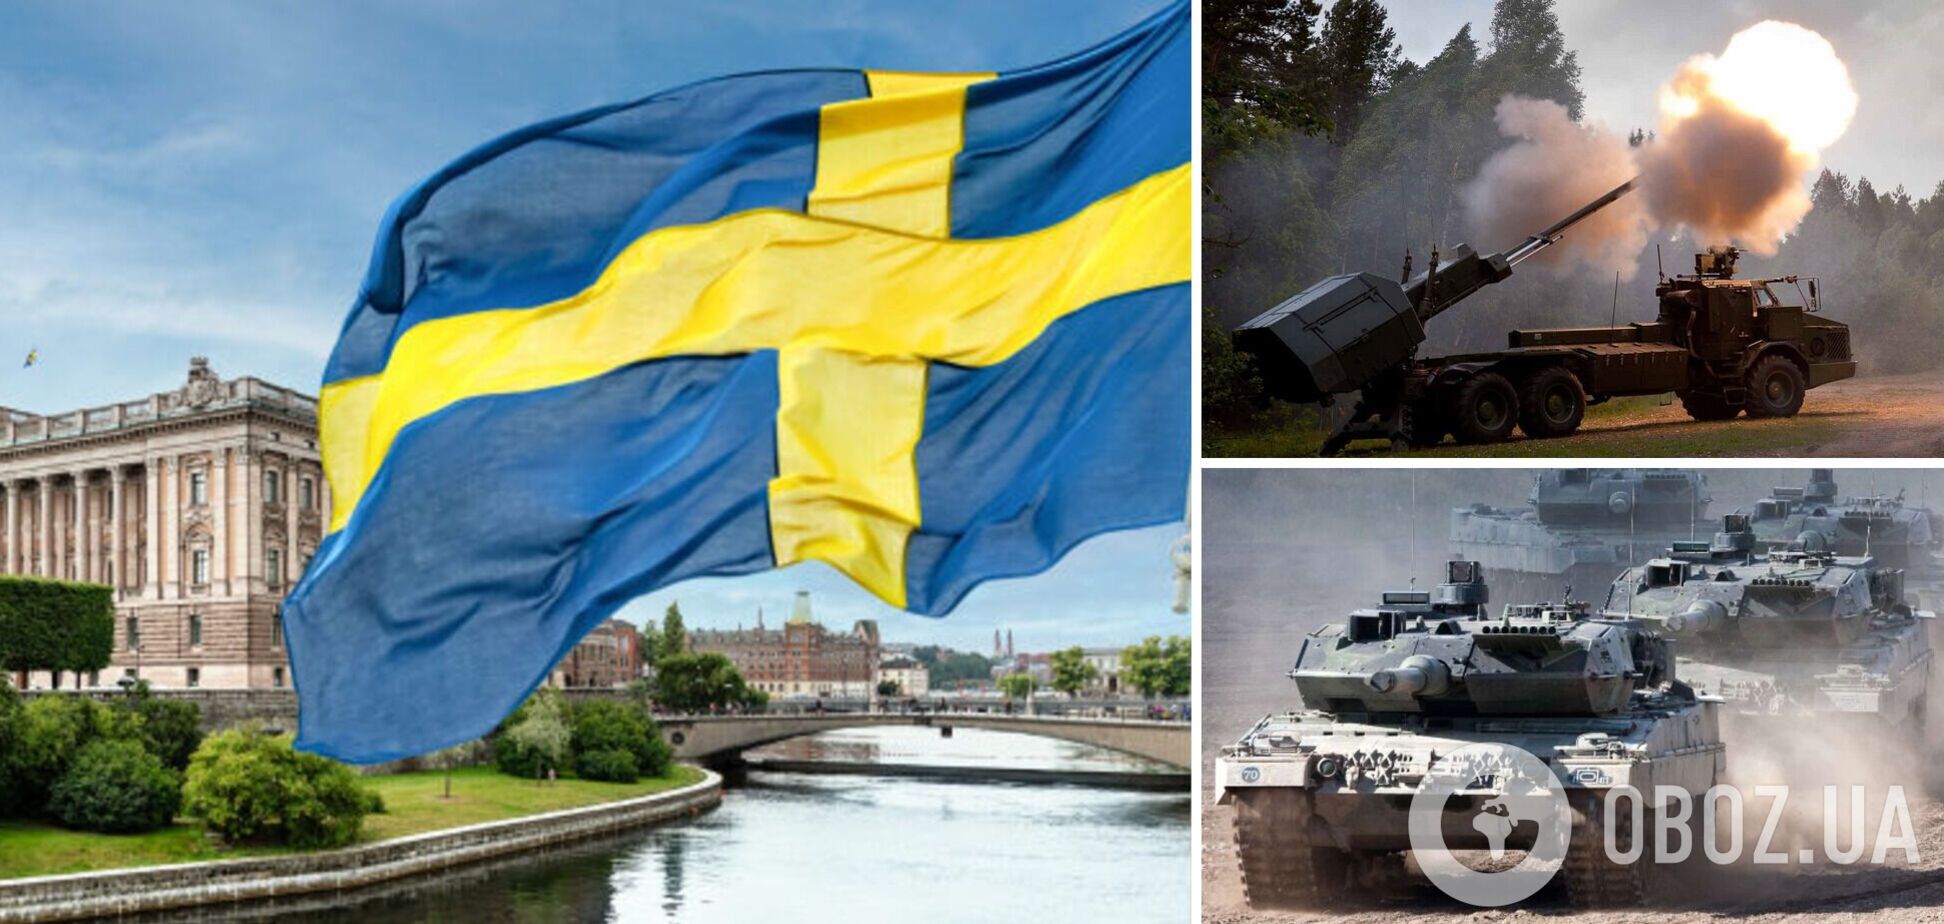 Парламент Швеции поддержал передачу Украине танков Leopard 2 и артиллерийских установок Archer